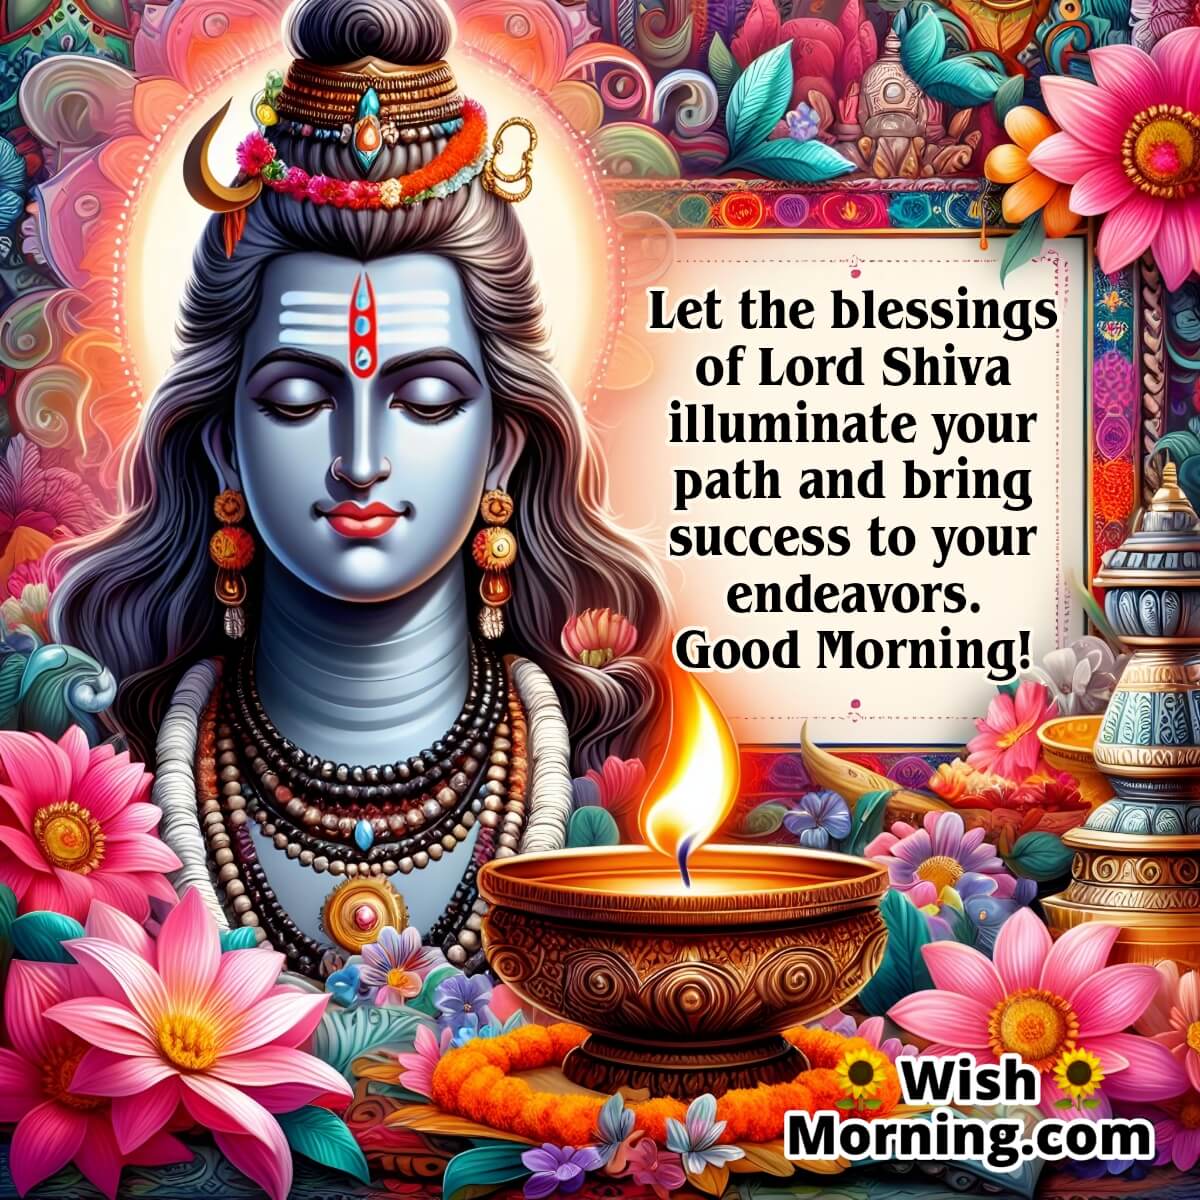 Good Morning Lord Shiva Wish (1)